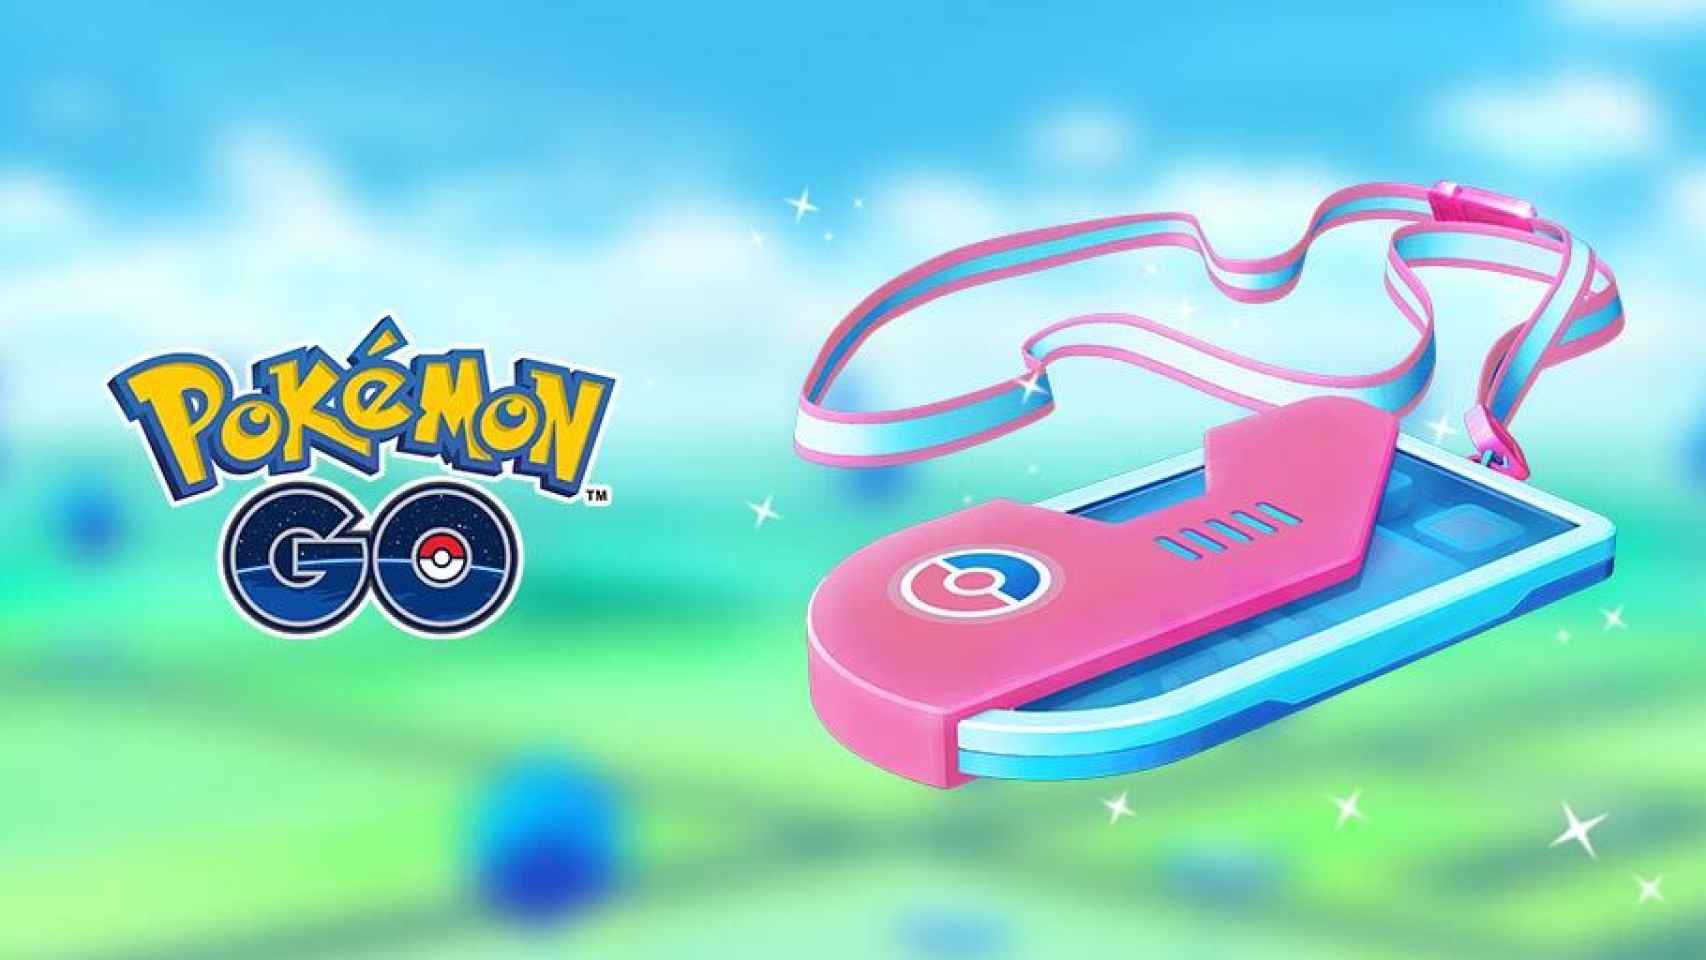 Pokémon Go tendrá un evento exclusivo al que solo se accederá pagando